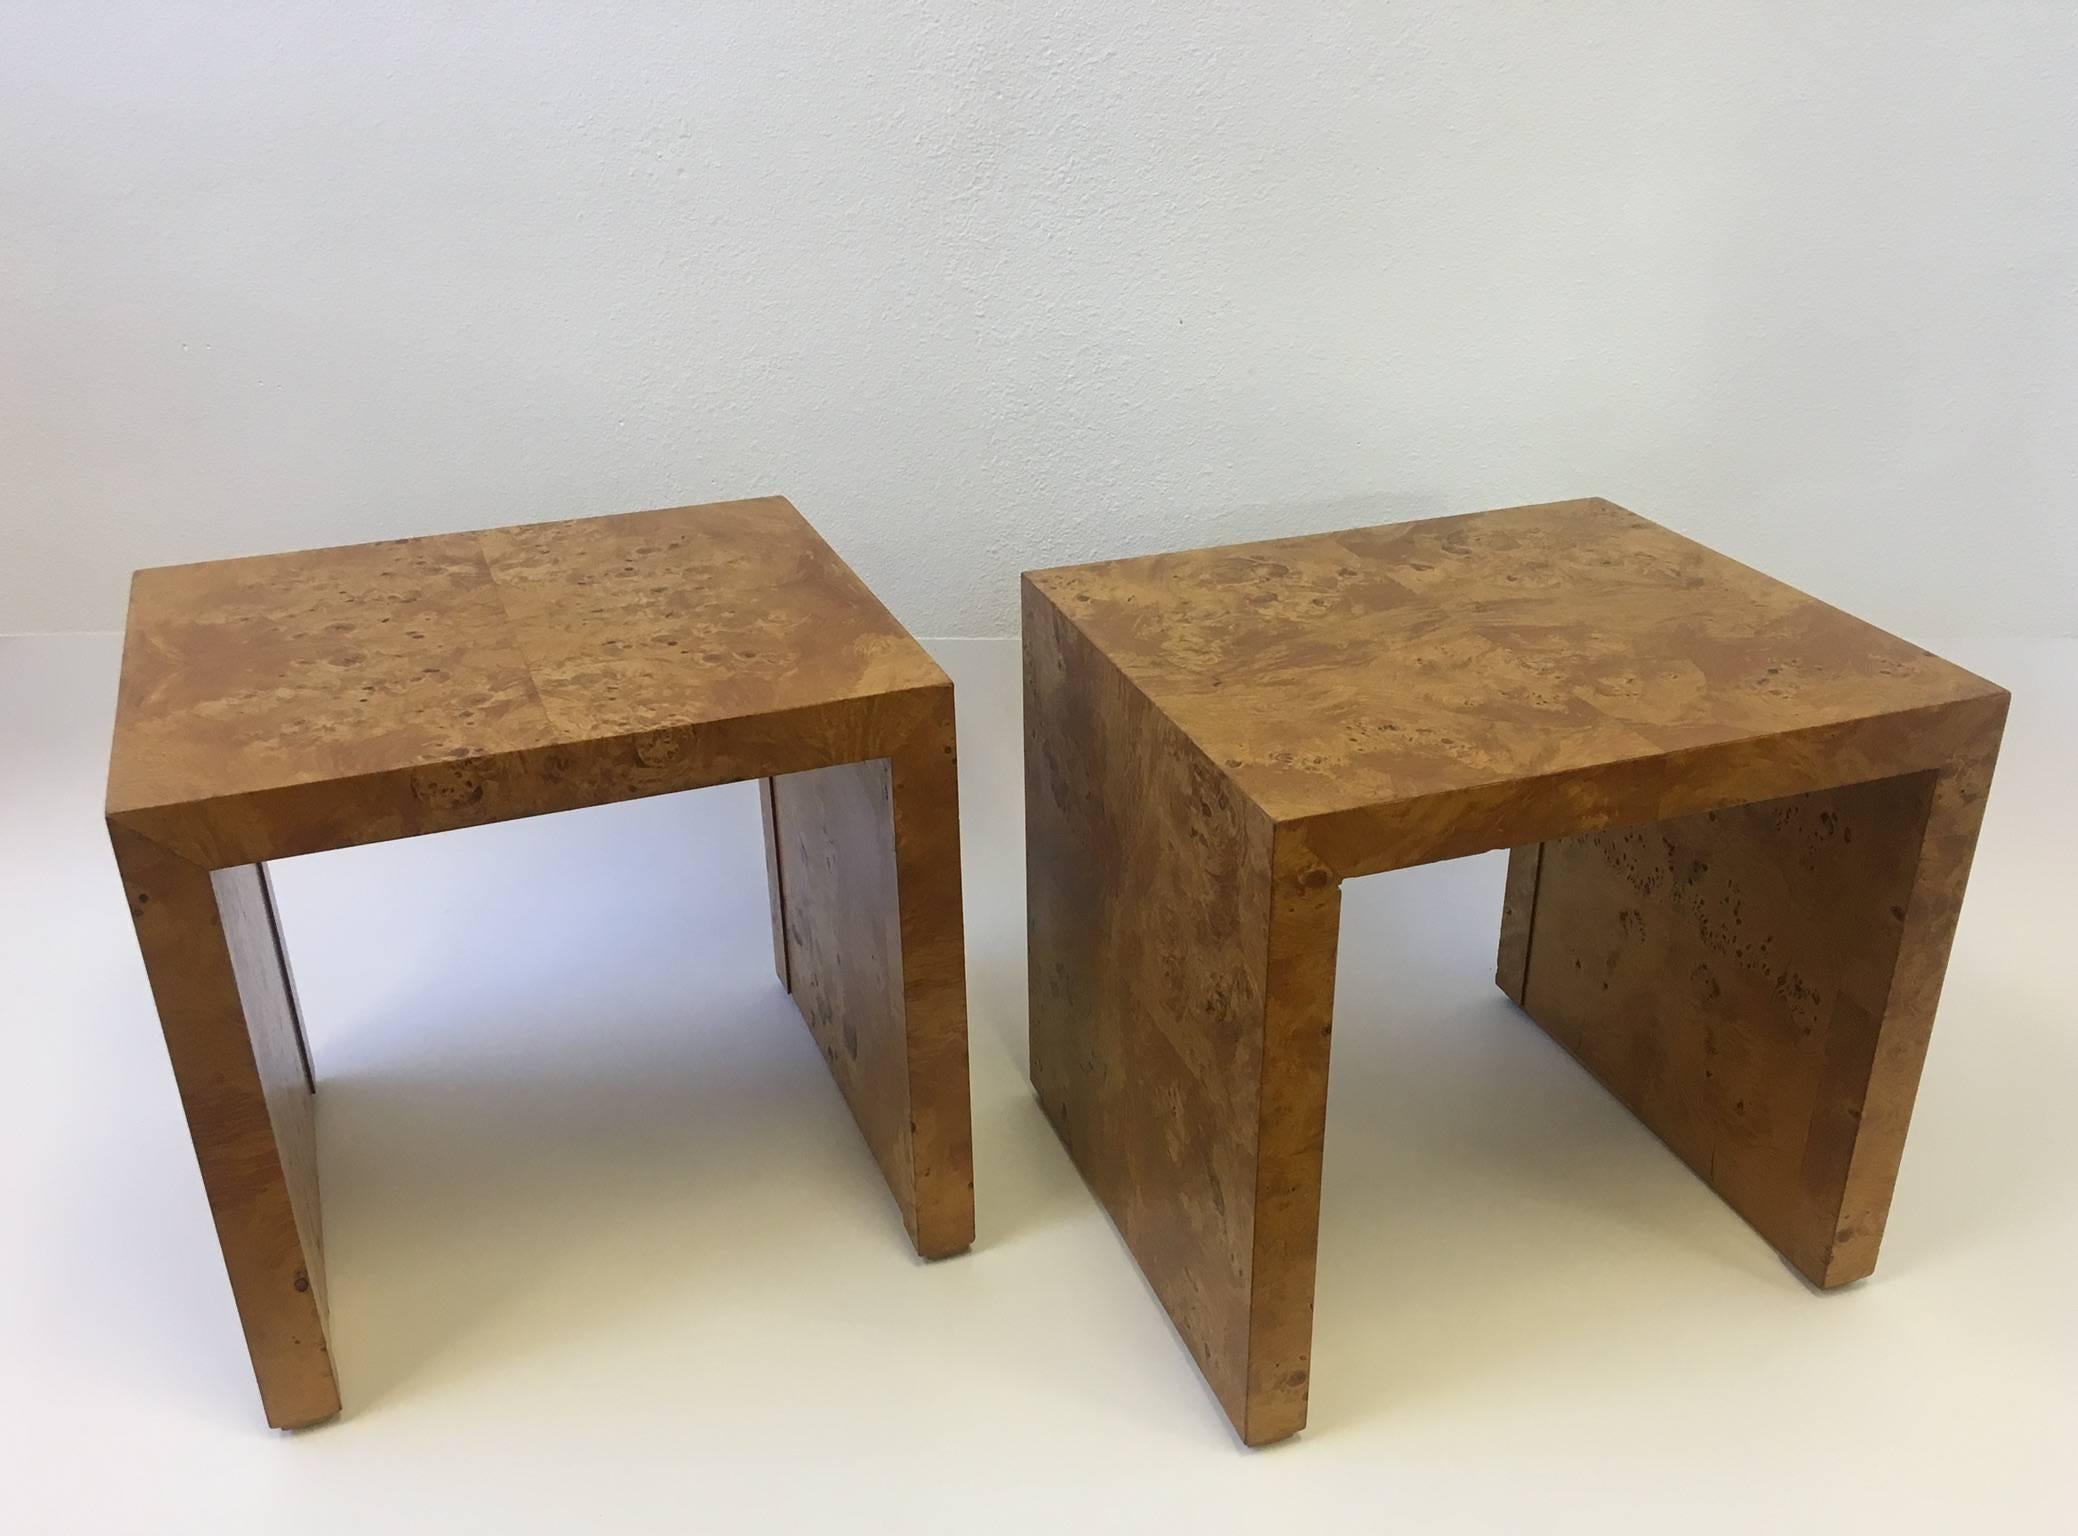 American Pair of Burl Wood Side Tables or Nightstands by Milo Baughman